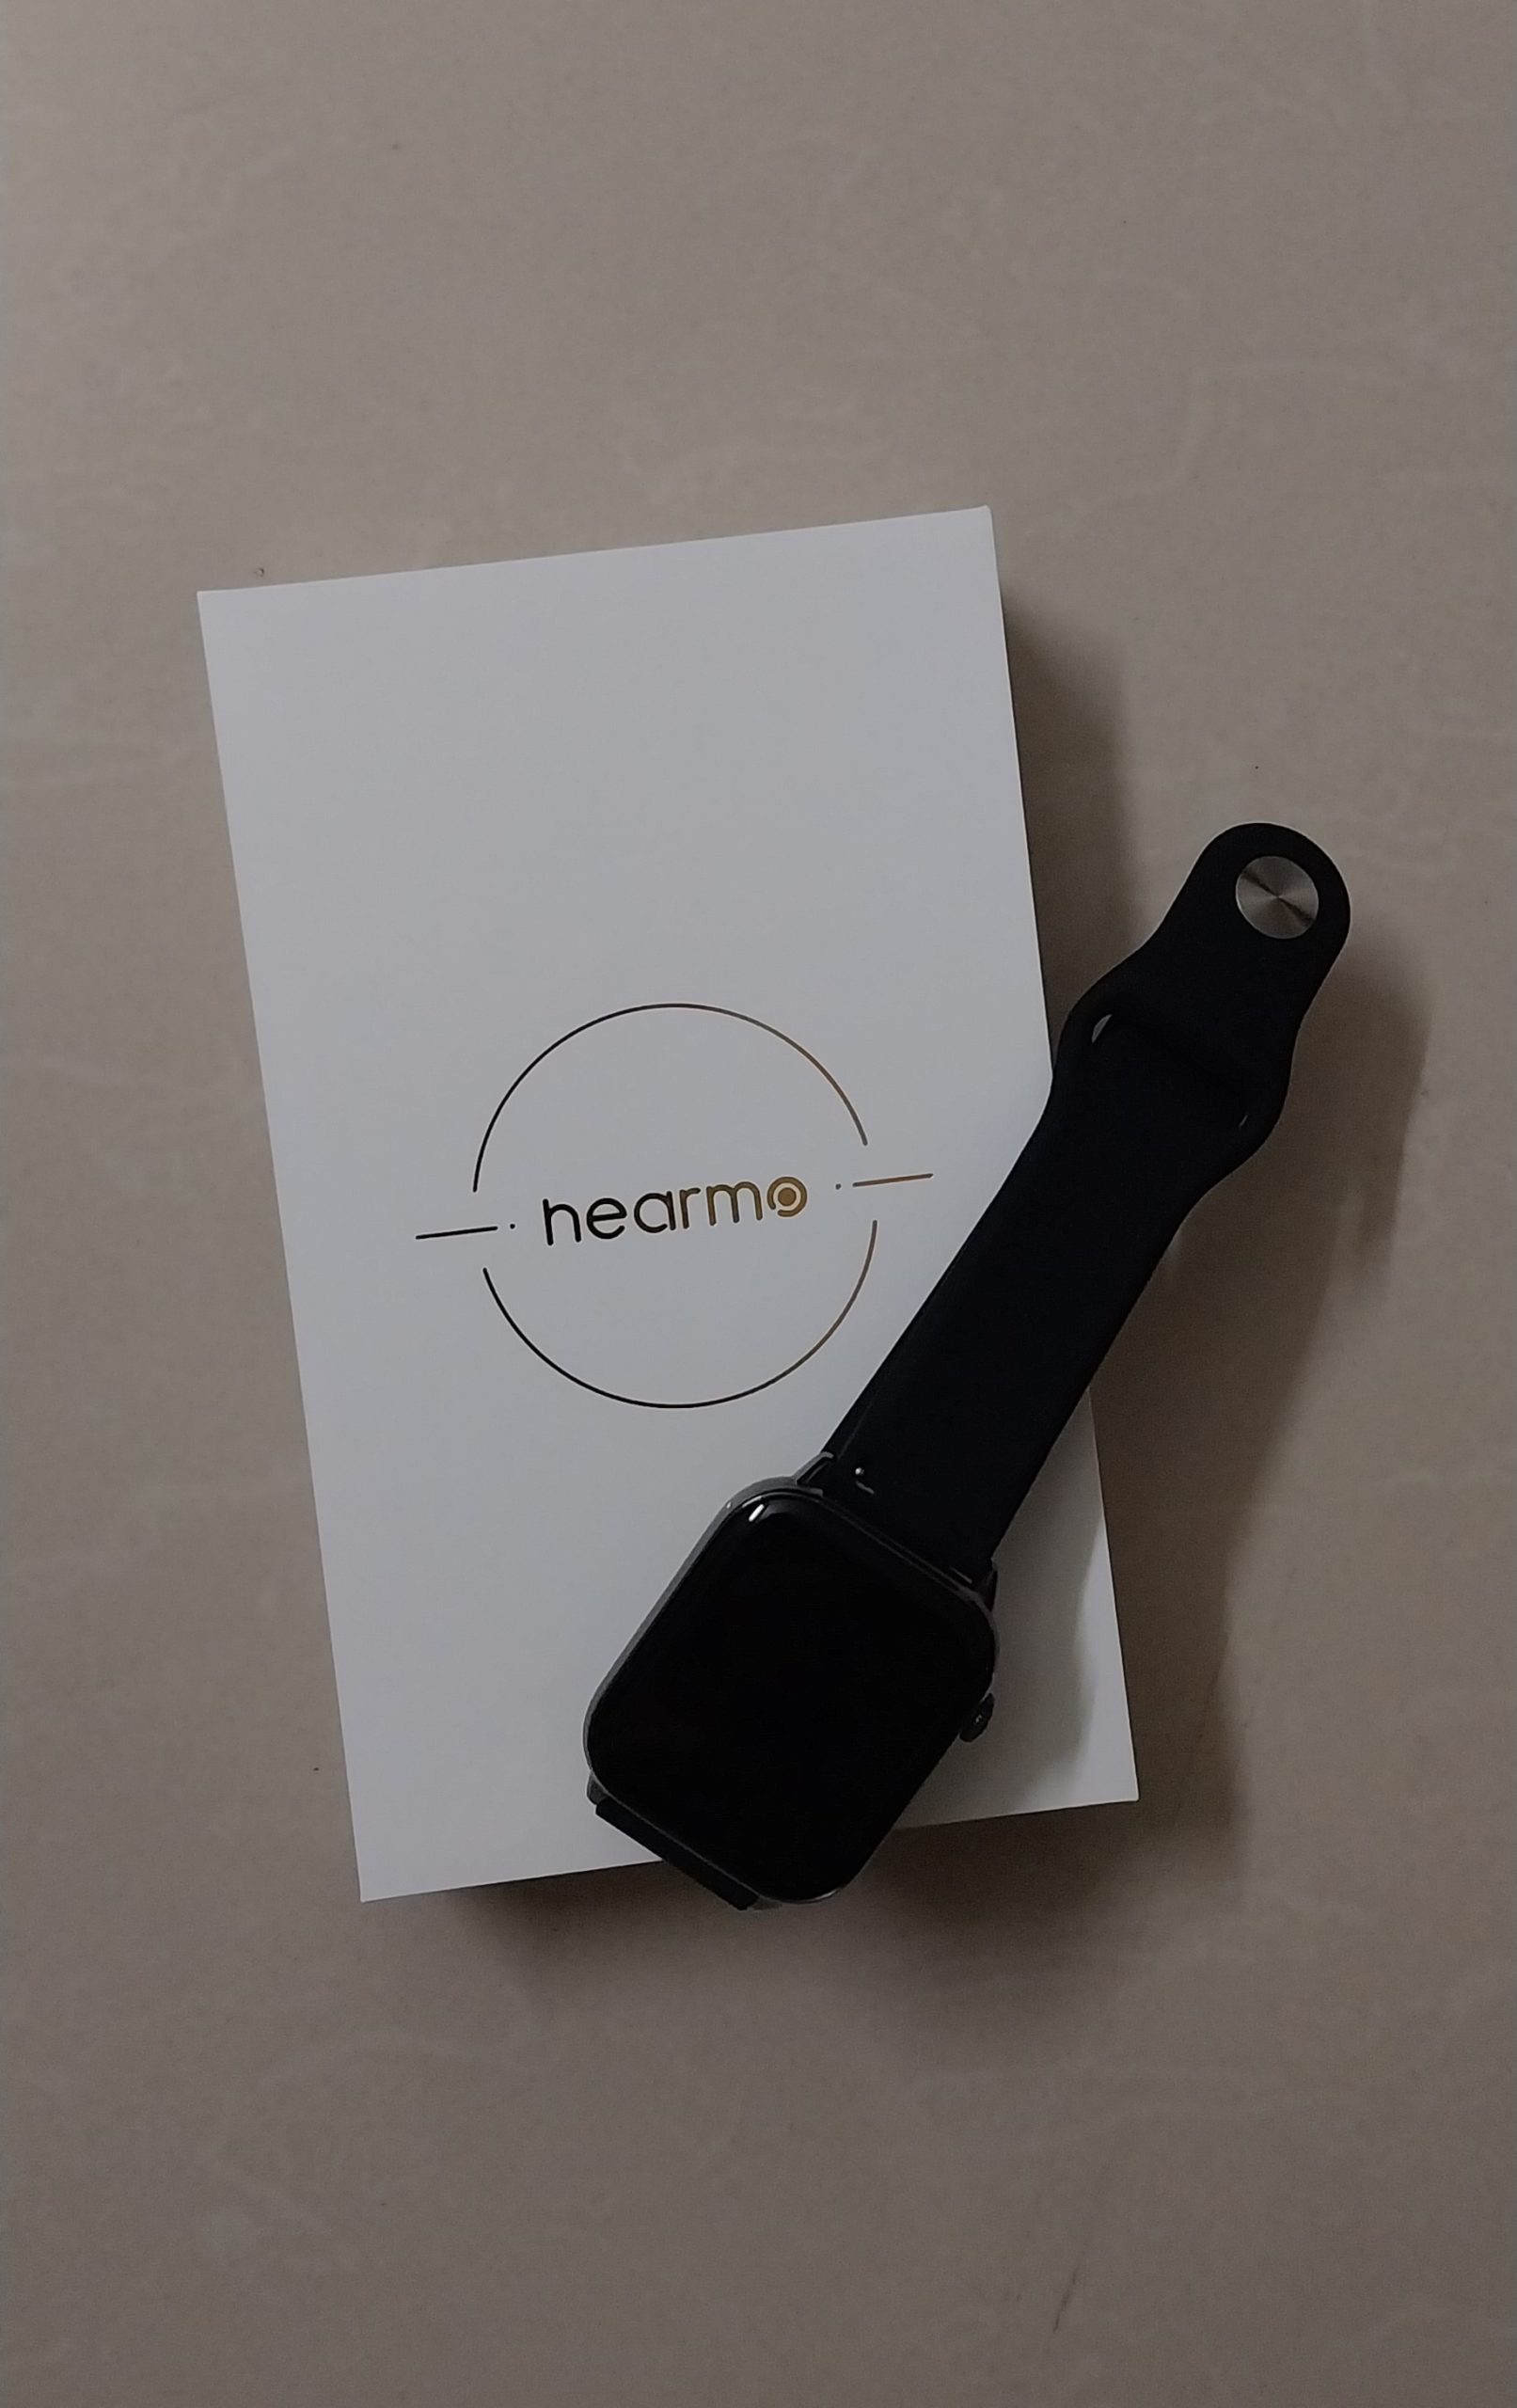 Hearmo HearFit VS Smartwatch